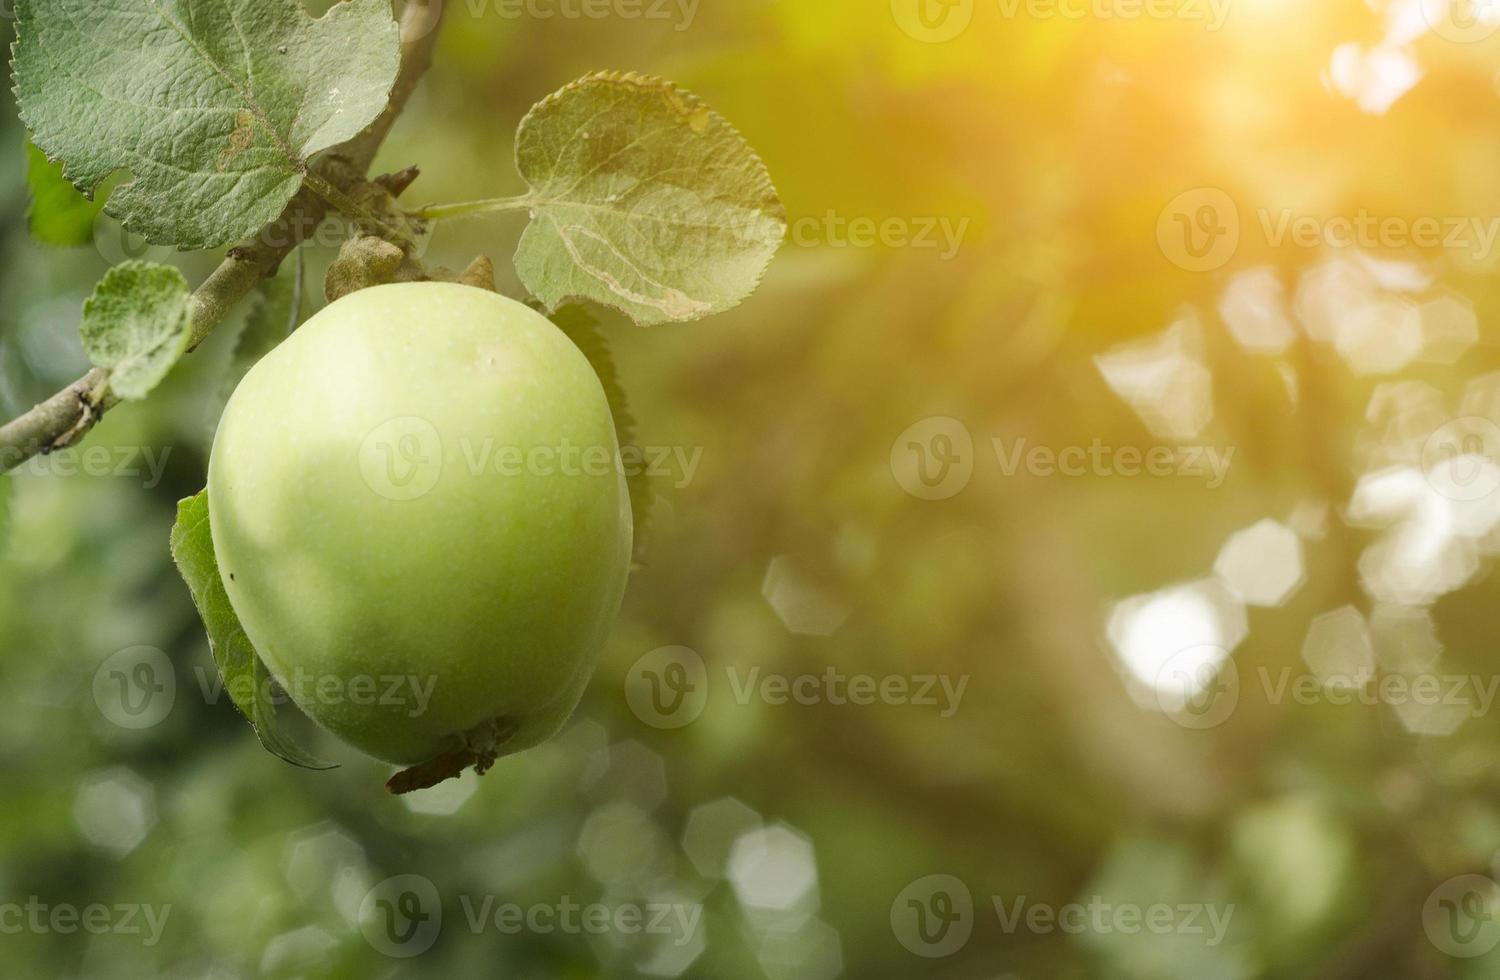 ett grönt äpple hänger på trädet foto